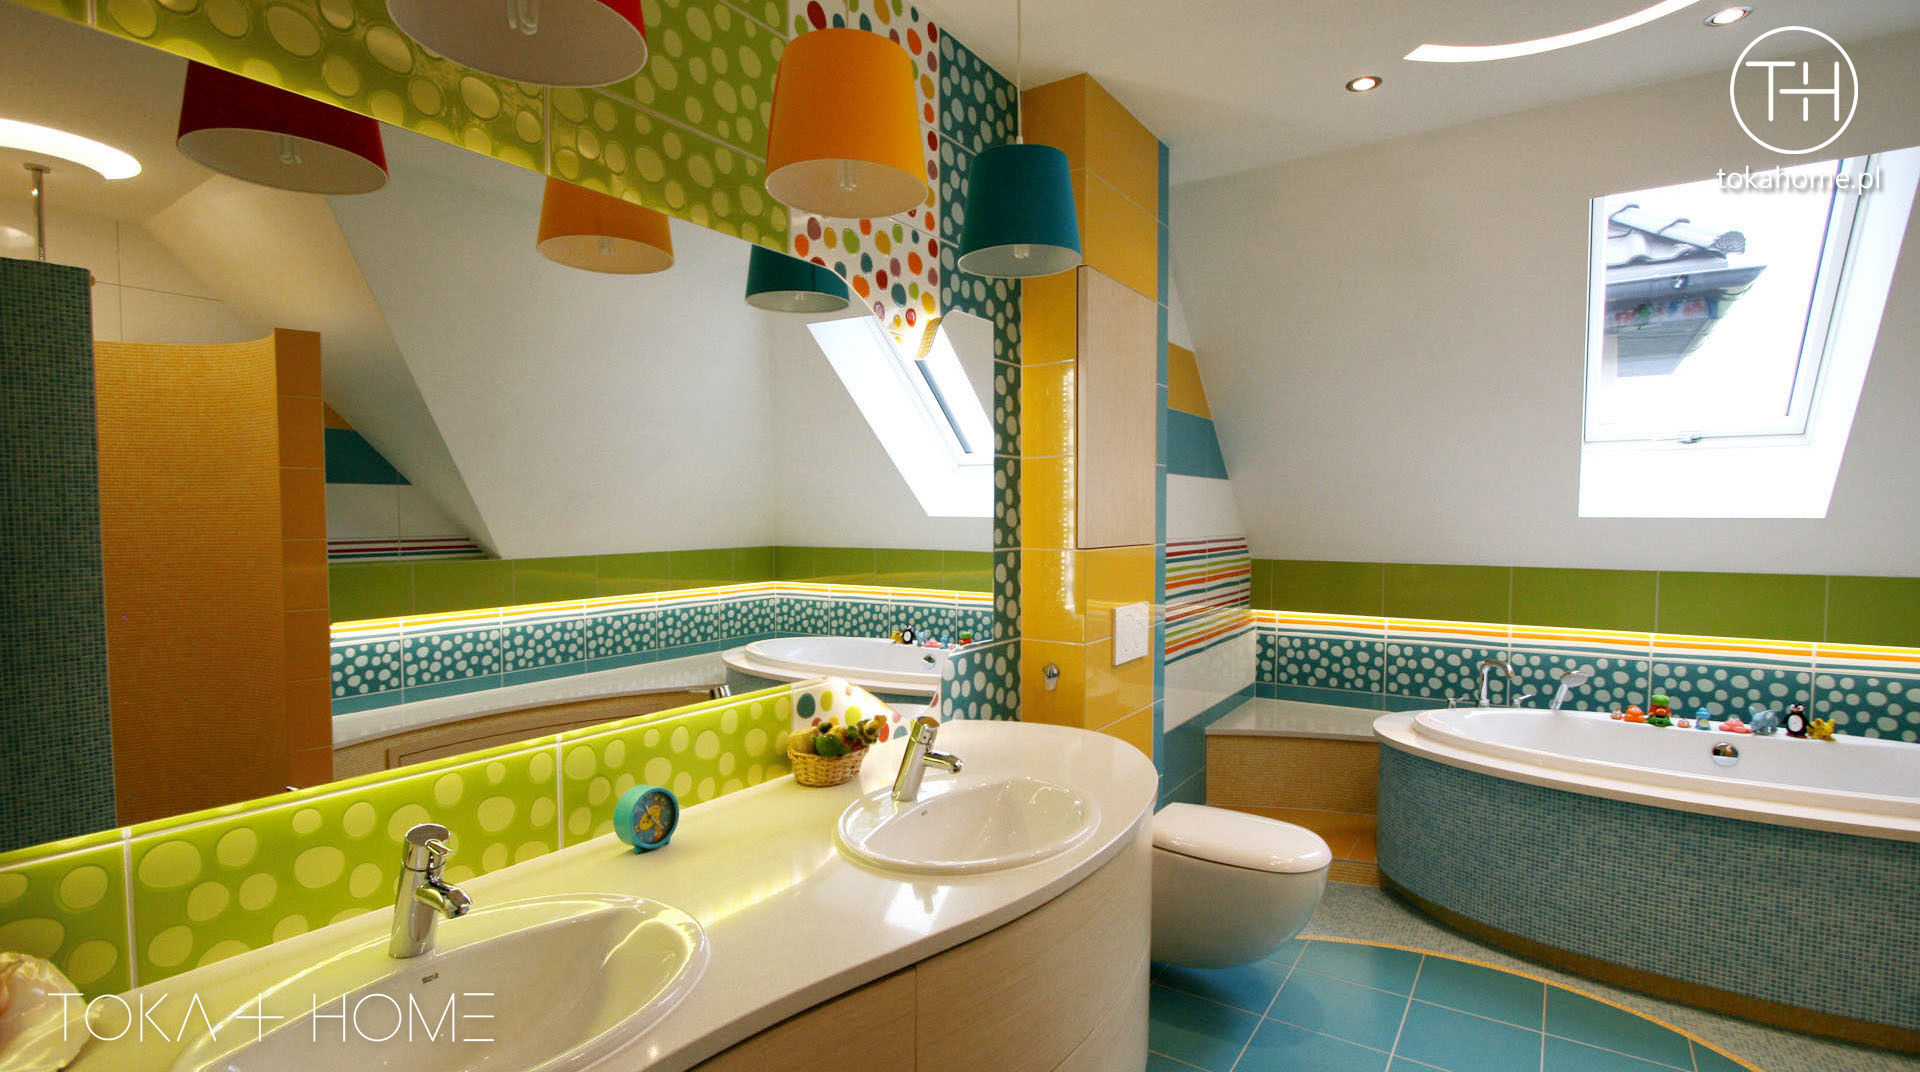 Zaczarowany świat - łazienka dla dzieci, TOKA + HOME TOKA + HOME 모던스타일 욕실 세라믹